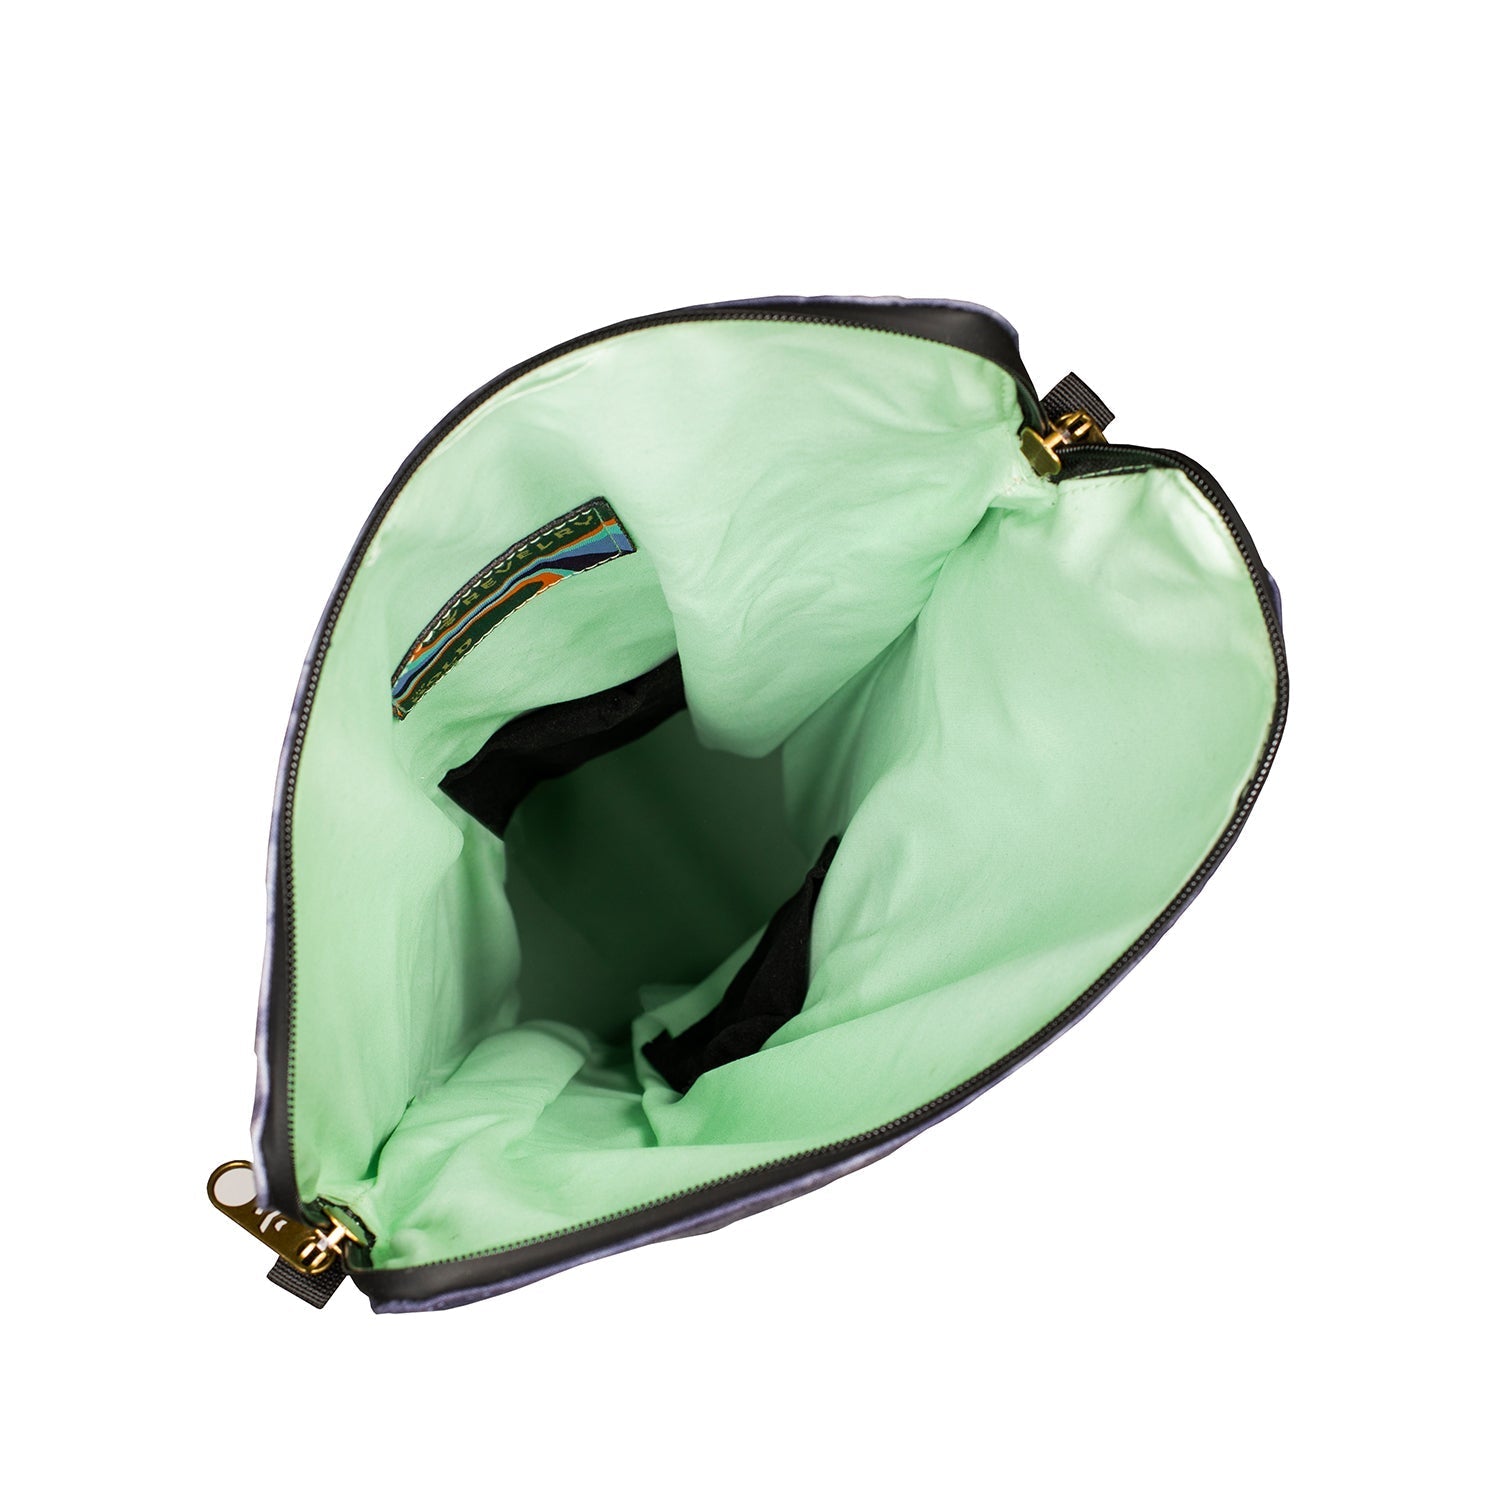 Revelry Defender - Smell Proof Padded Backpack